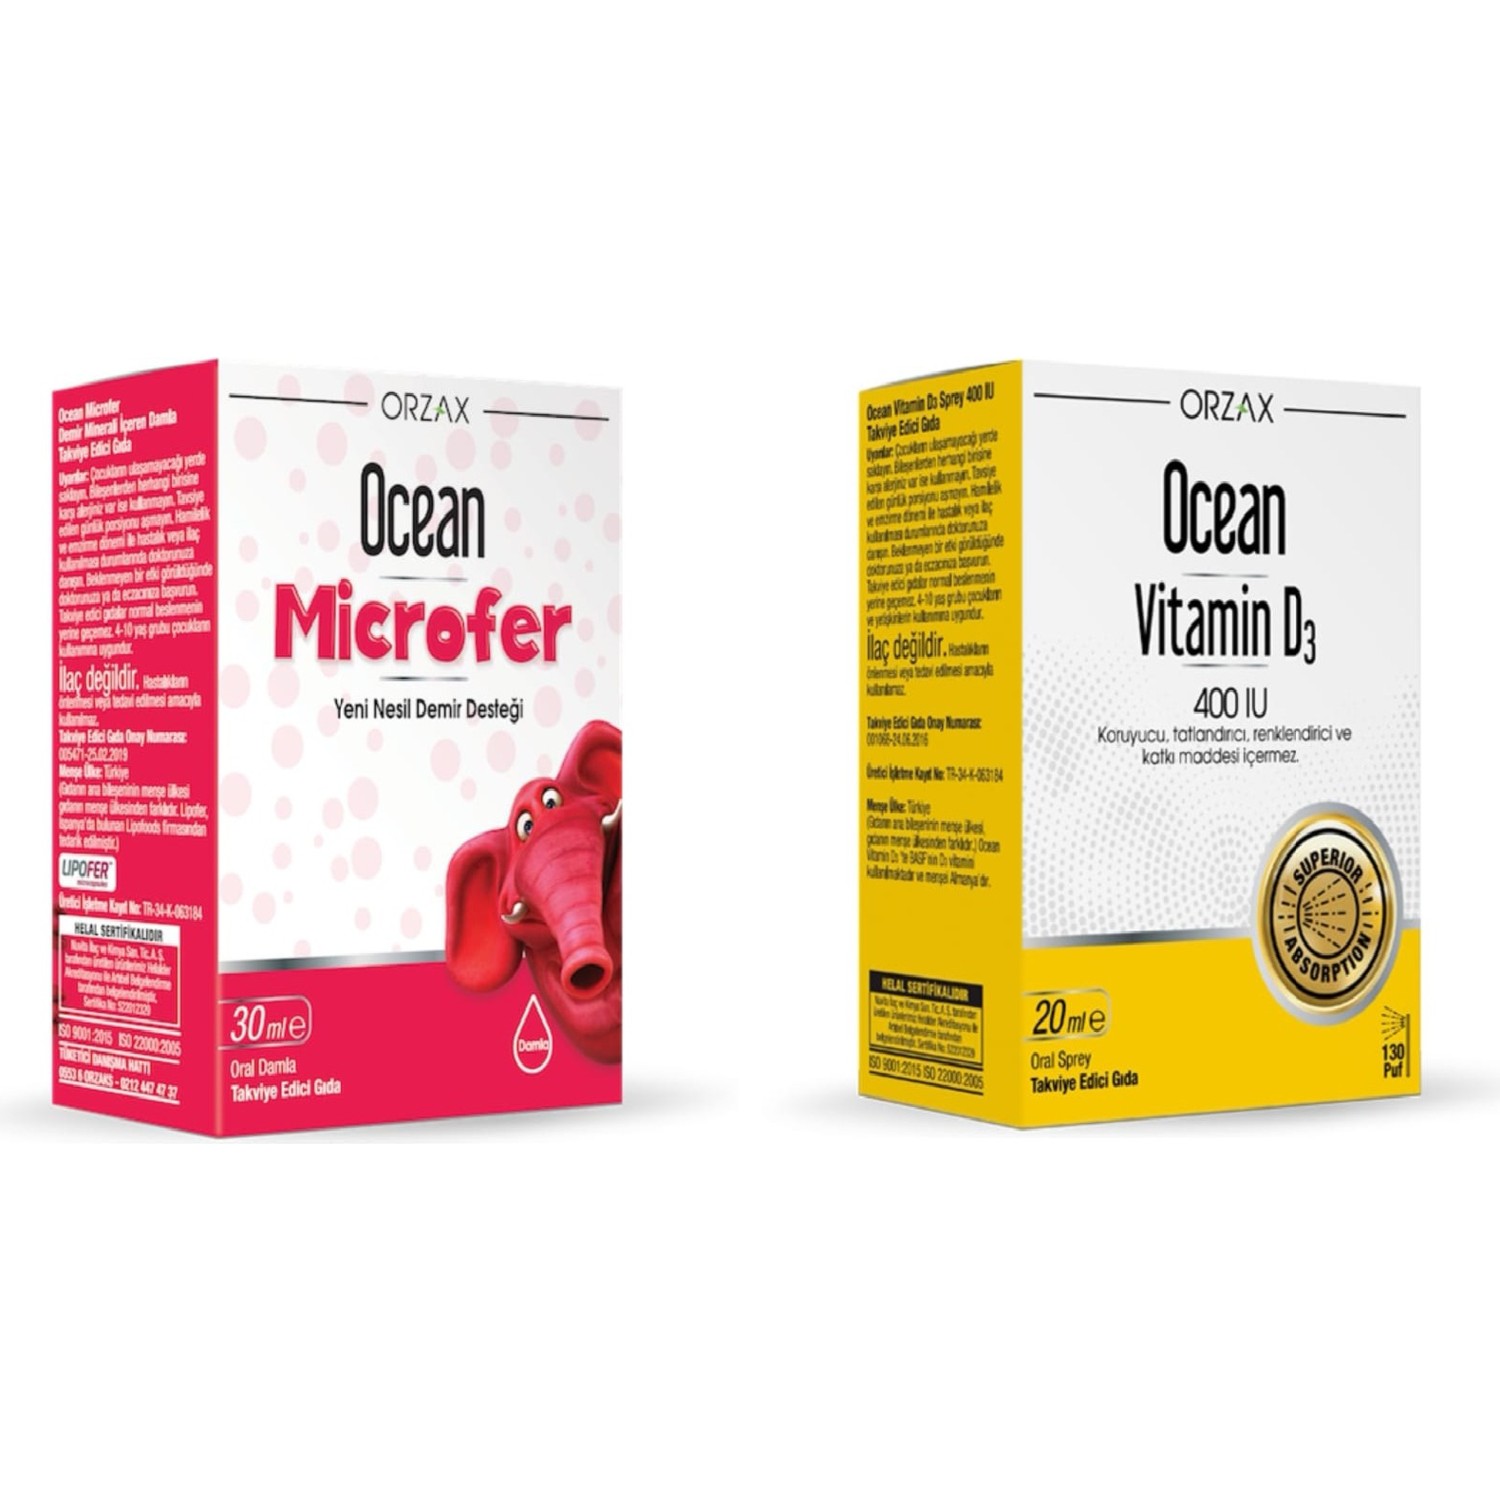 цена Капли Orzax Ocean Microfer + Спрей Ocean Vitamin D 400 IU